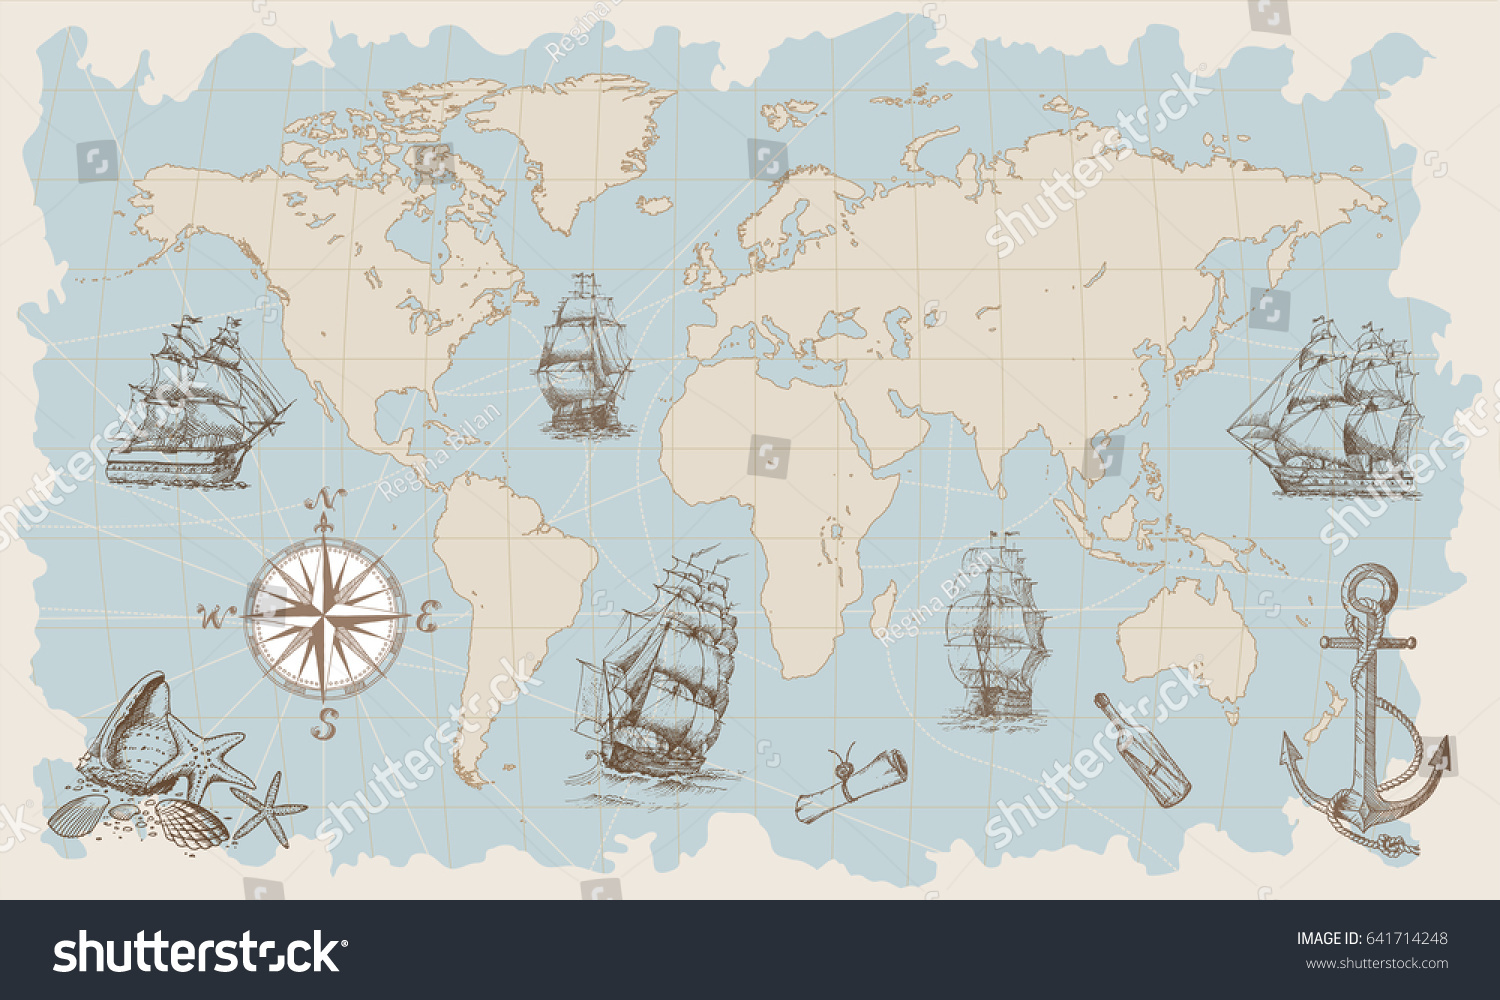 Карта морского путешествия для детей